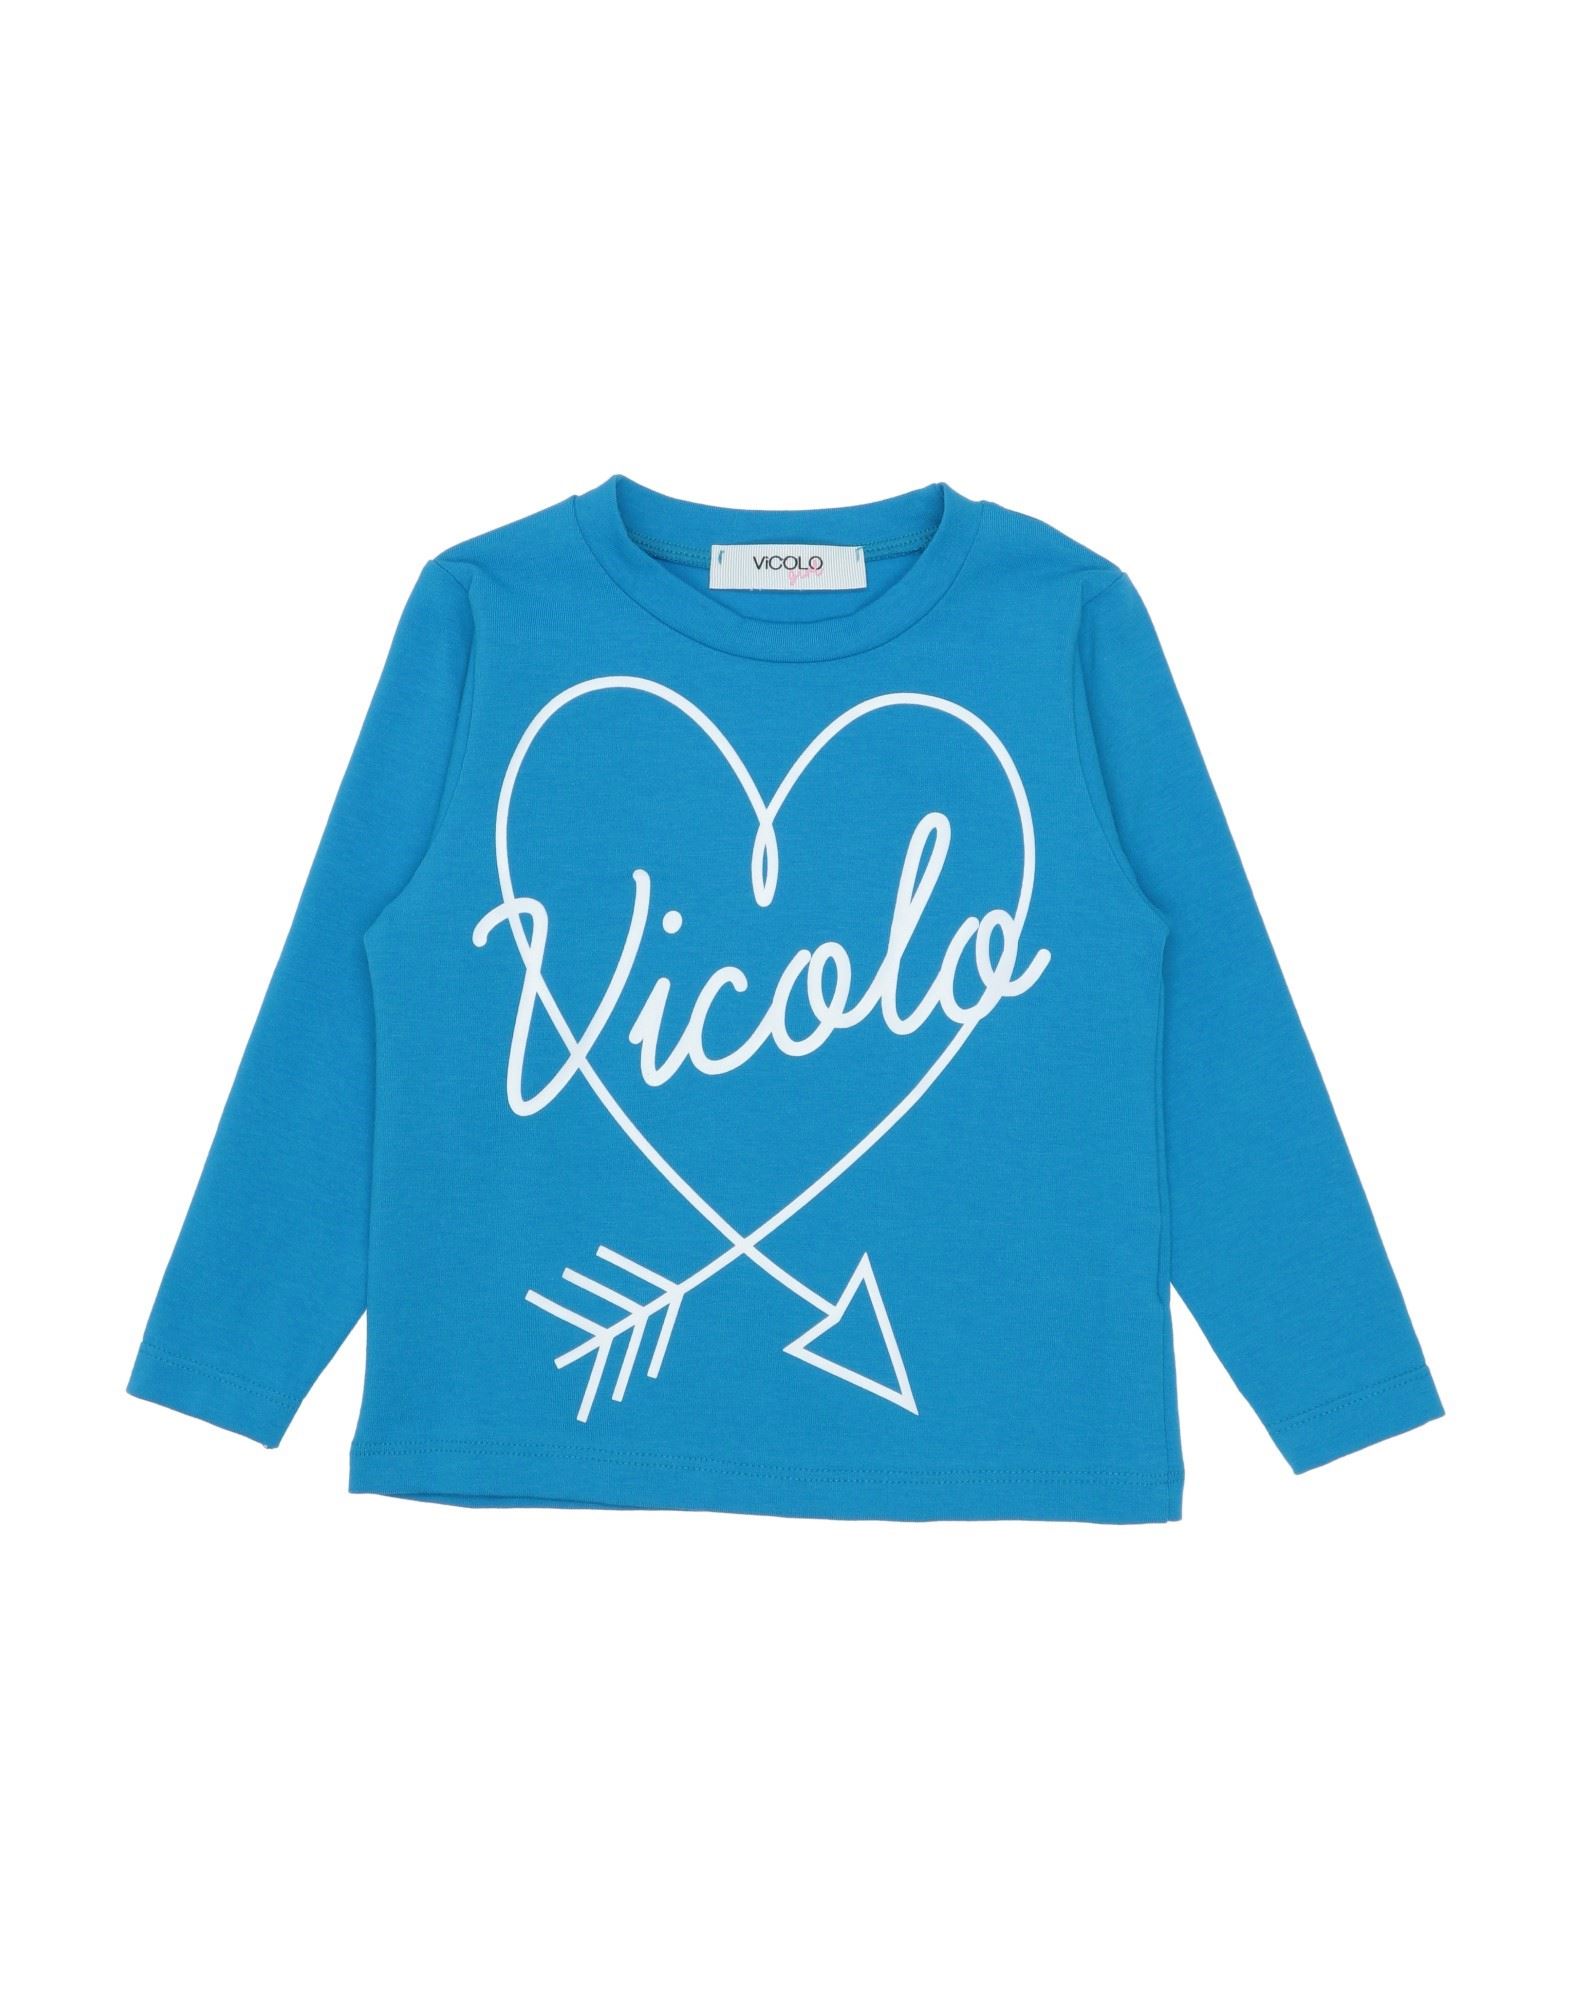 VICOLO VICOLO T-SHIRTS